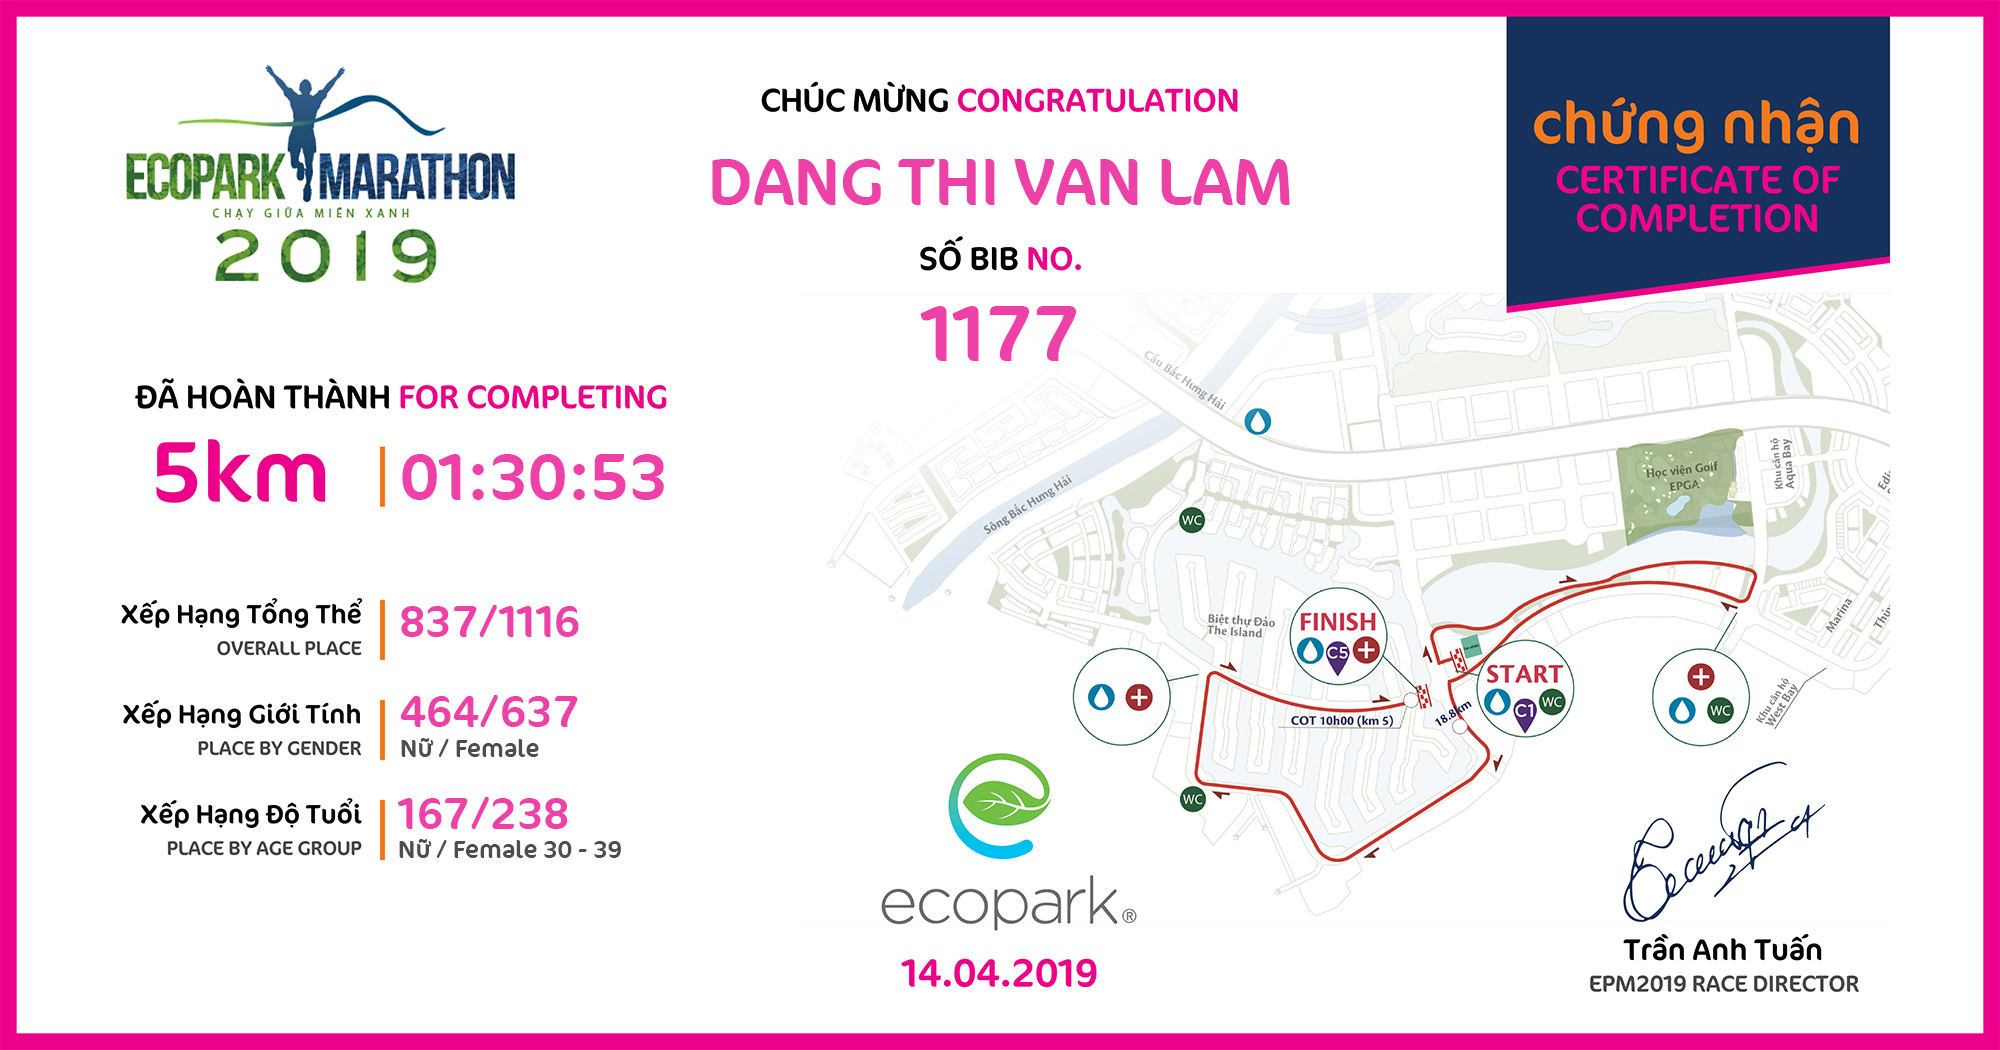 1177 - Dang Thi Van Lam